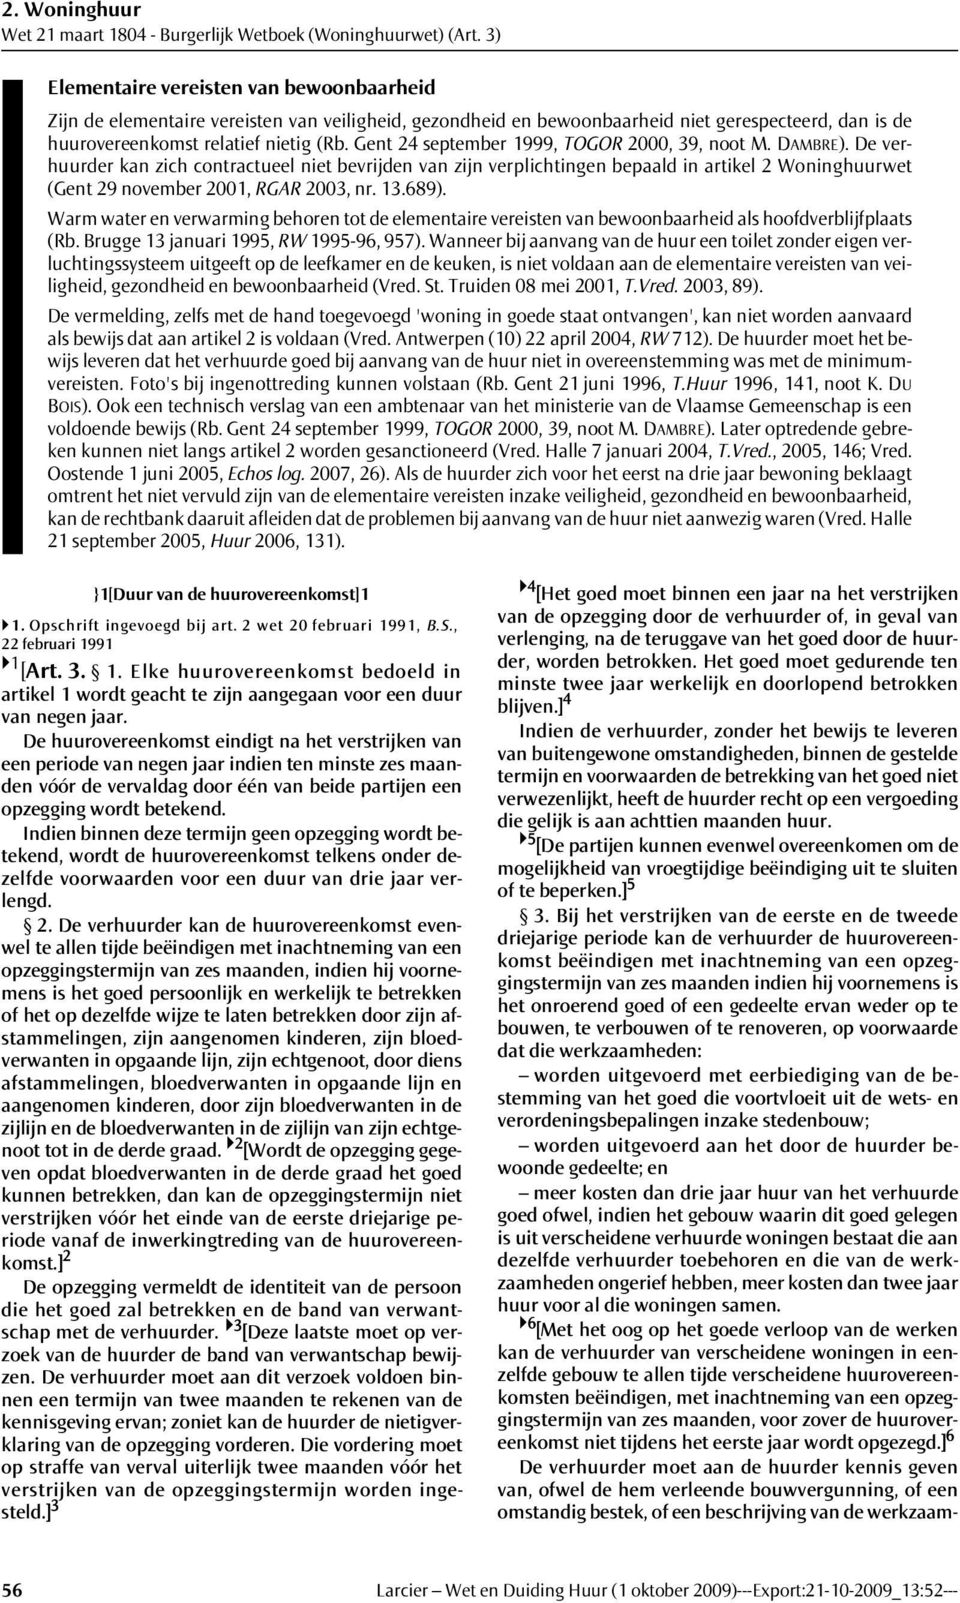 De verhuurder kan zich contractueel niet bevrijden van zijn verplichtingen bepaald in artikel 2 Woninghuurwet (Gent 29 november 2001, RGAR 2003, nr. 13.689).